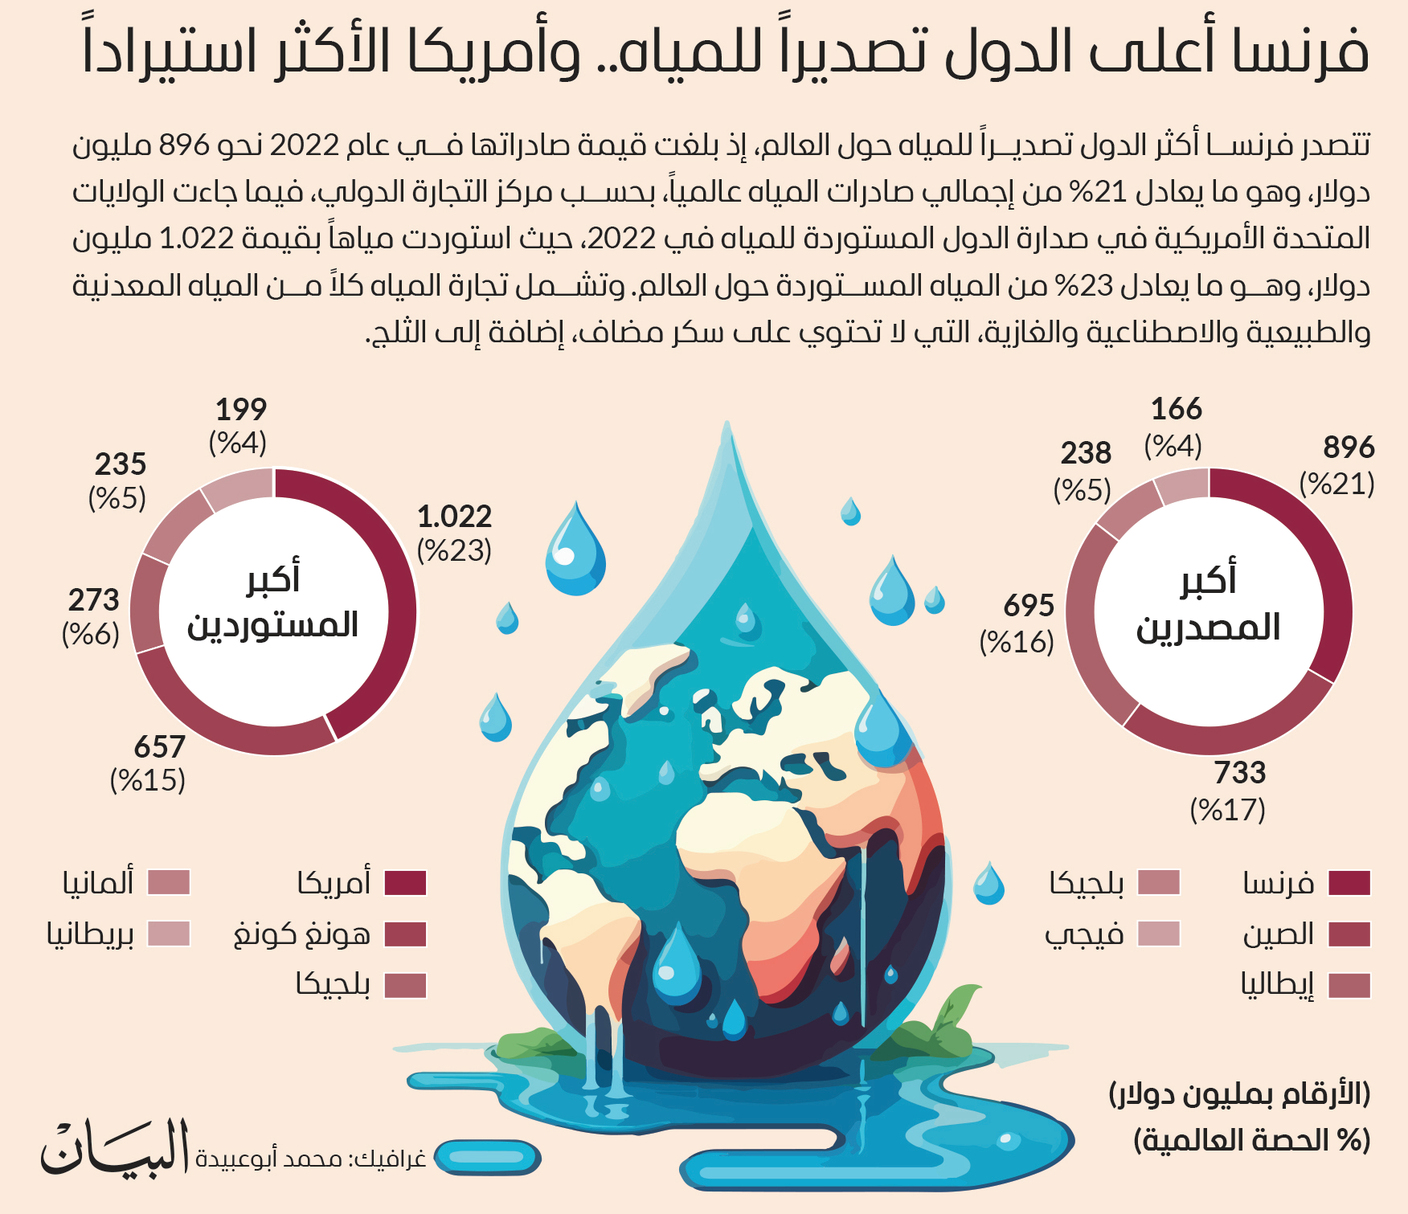 فرنسا أعلى الدول تصديراً للمياه.. وأمريكا الأكثر استيراداً